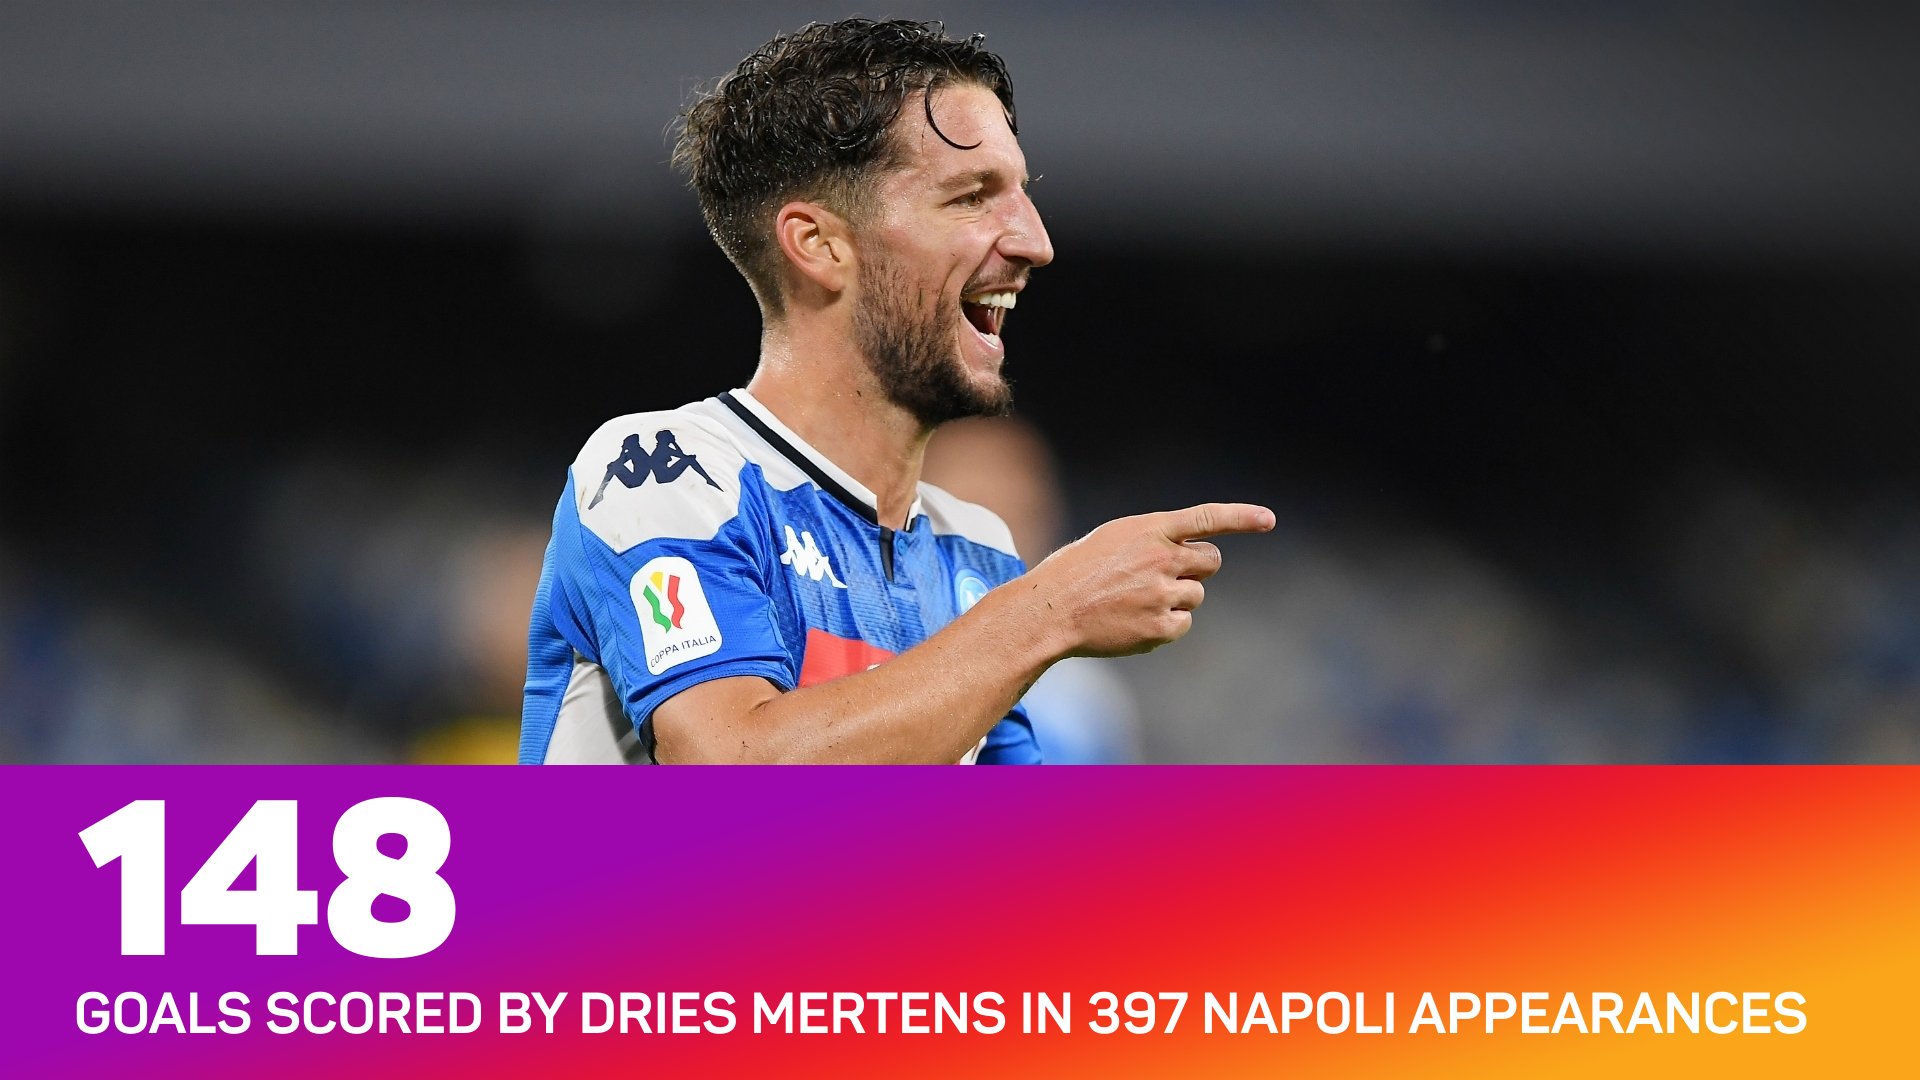 Dries Mertens scored 148 goals for Napoli